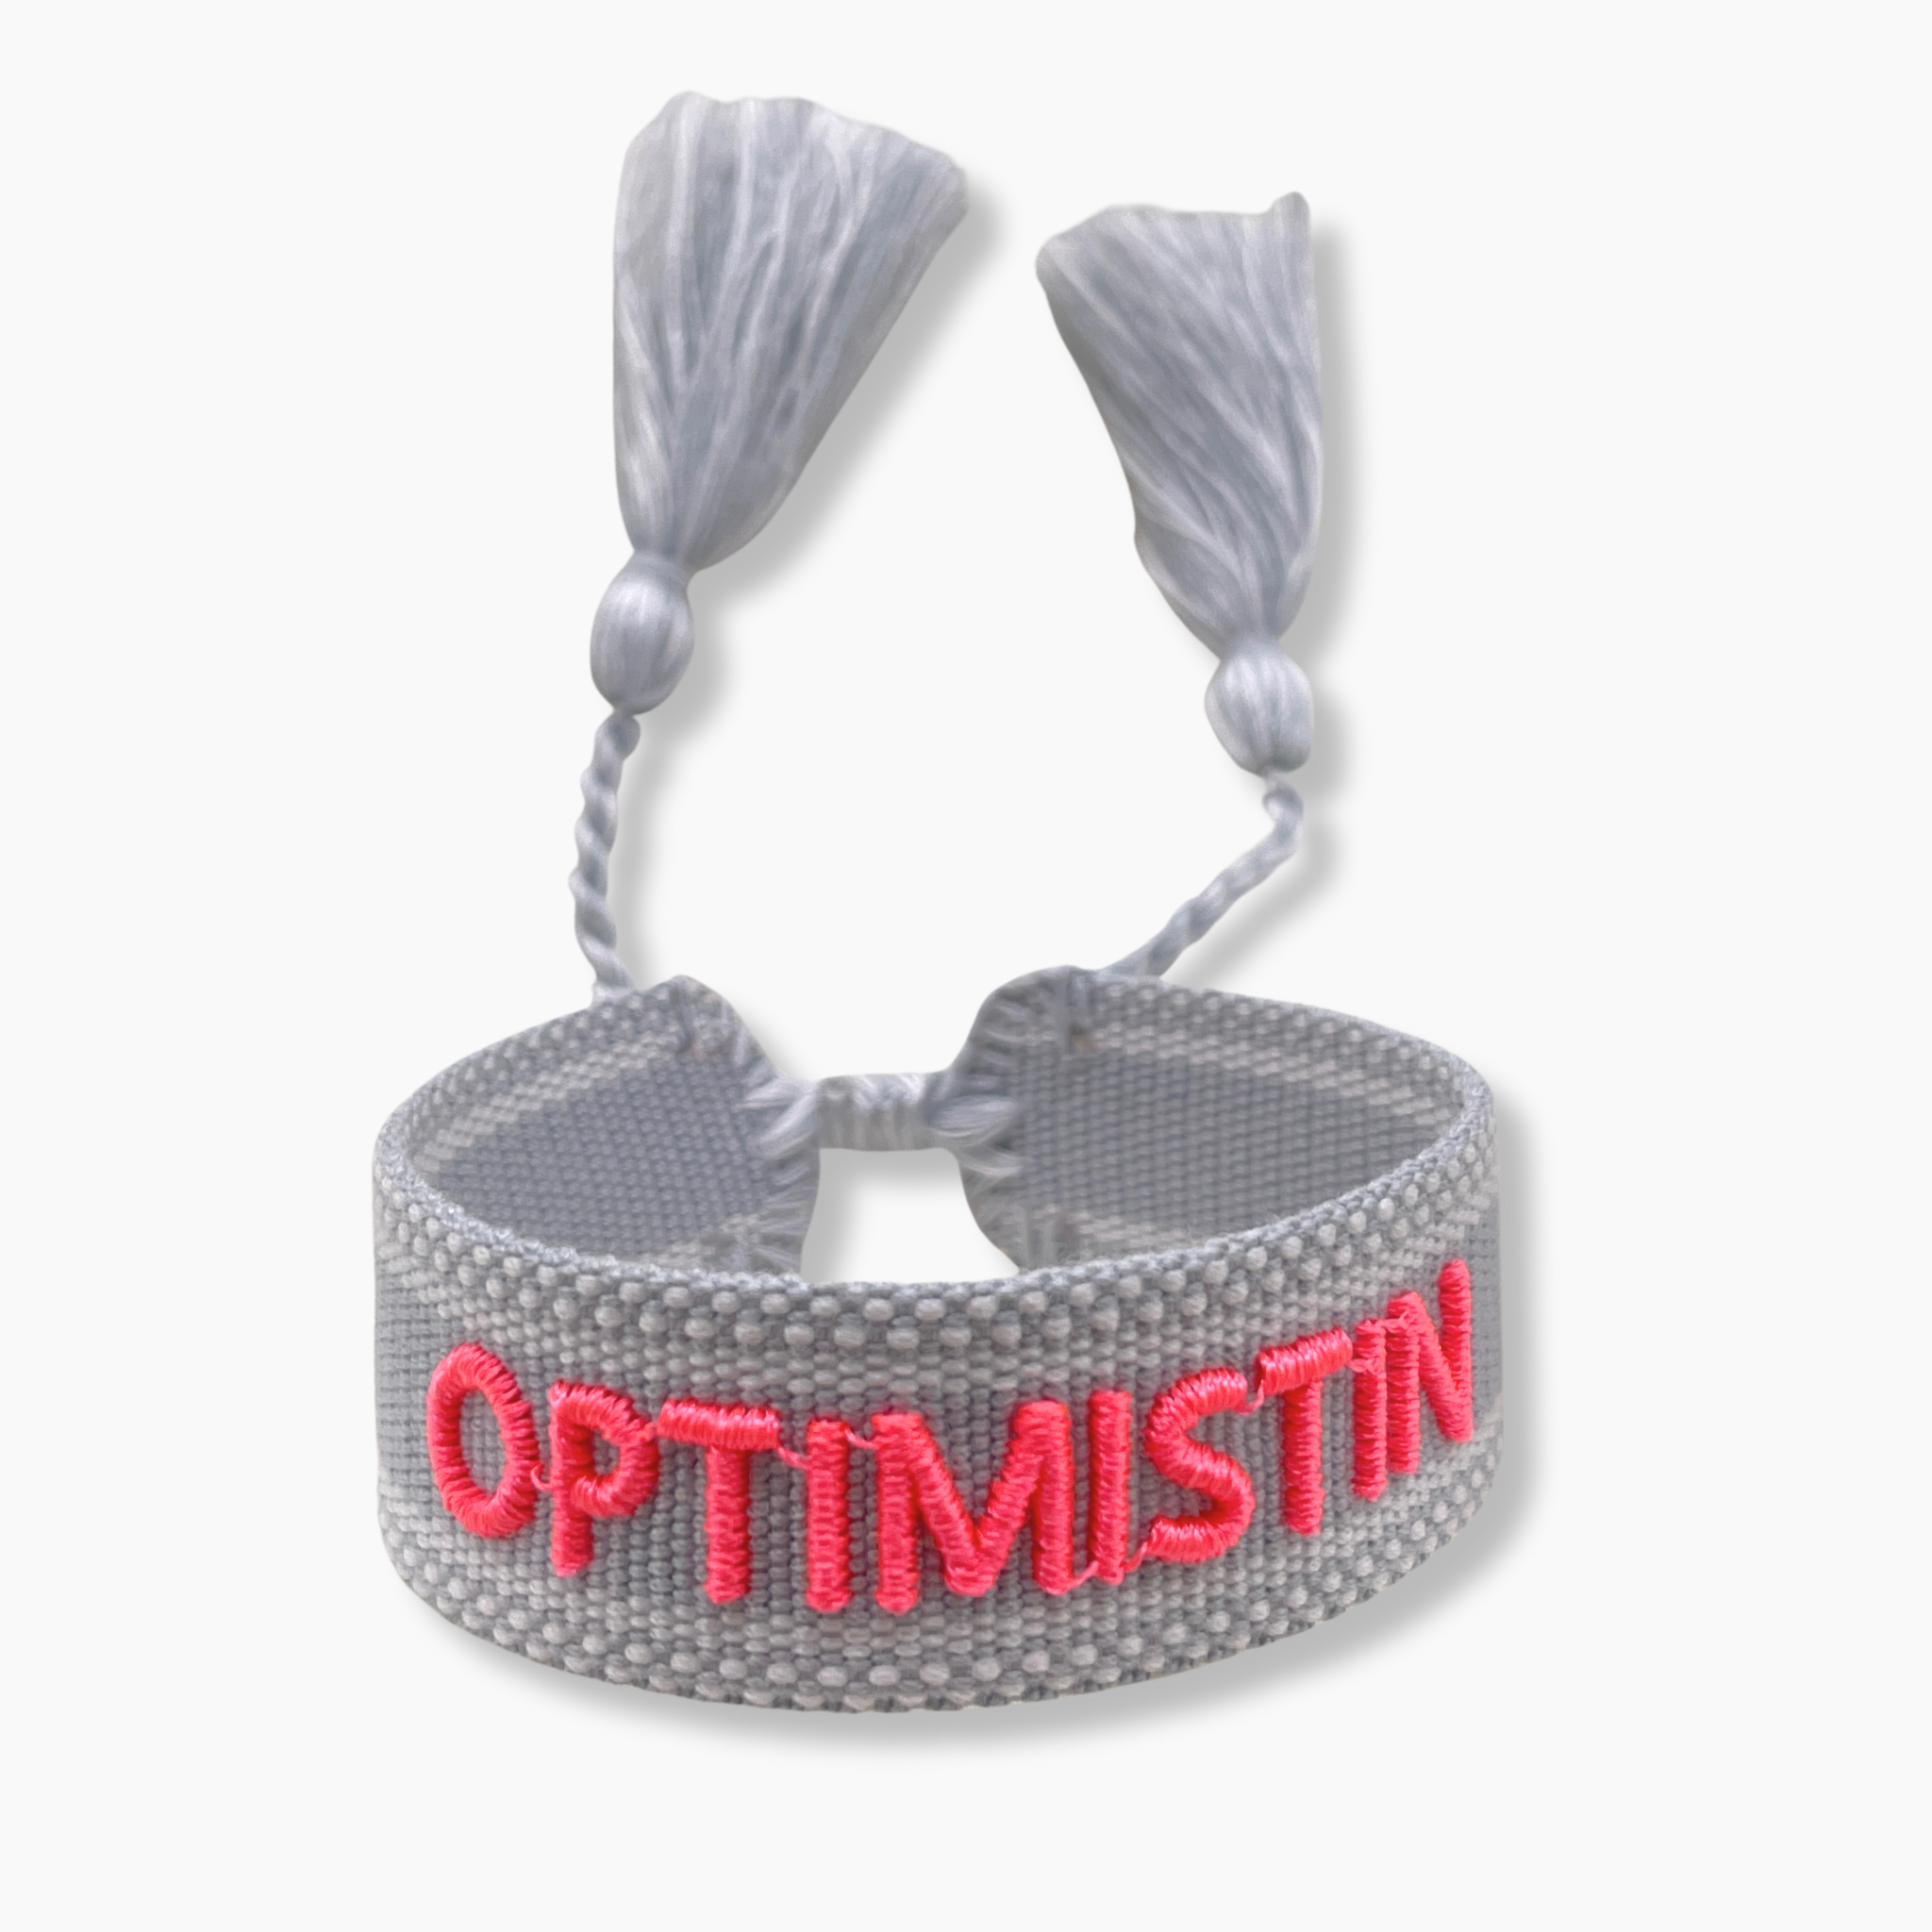 Festival Bracelet Optimistin